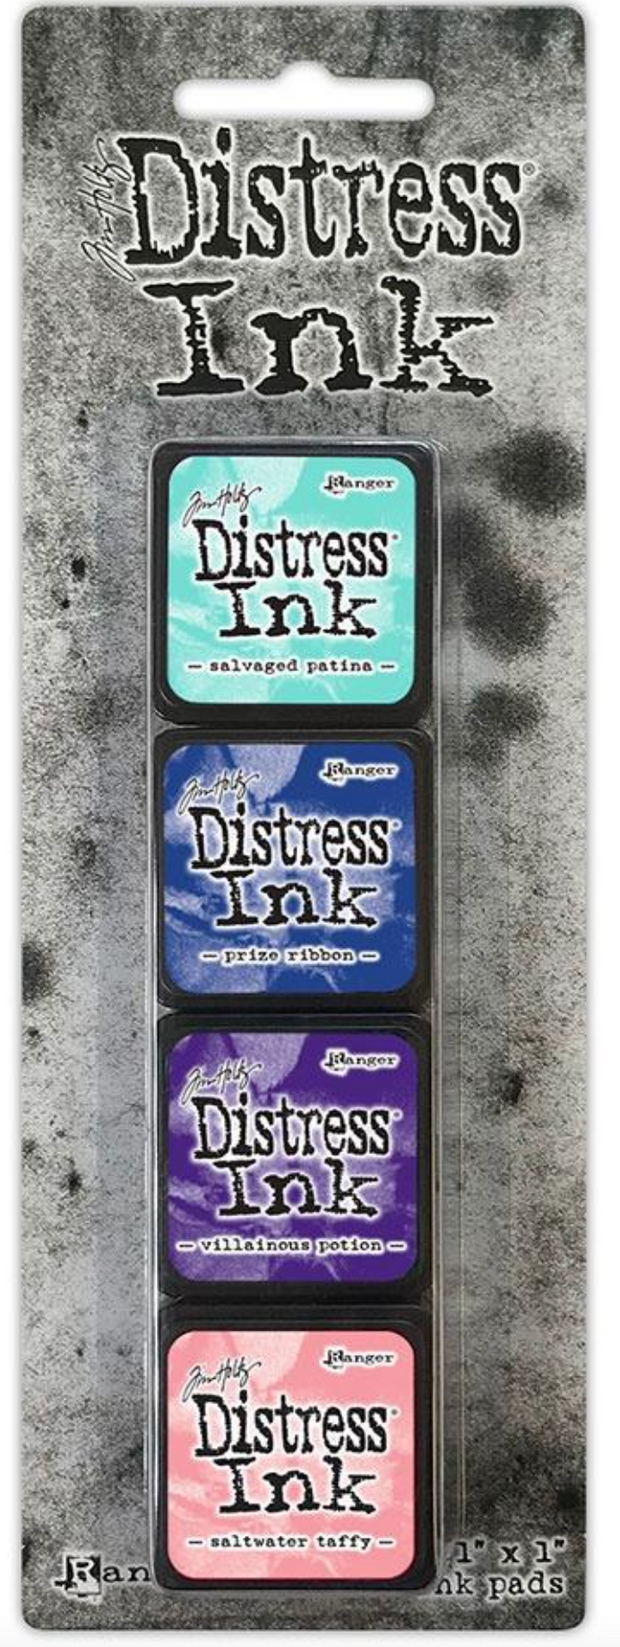 Tim Holtz Distress Mini Archival Ink - Kit 3 - Heidi Swapp Shop